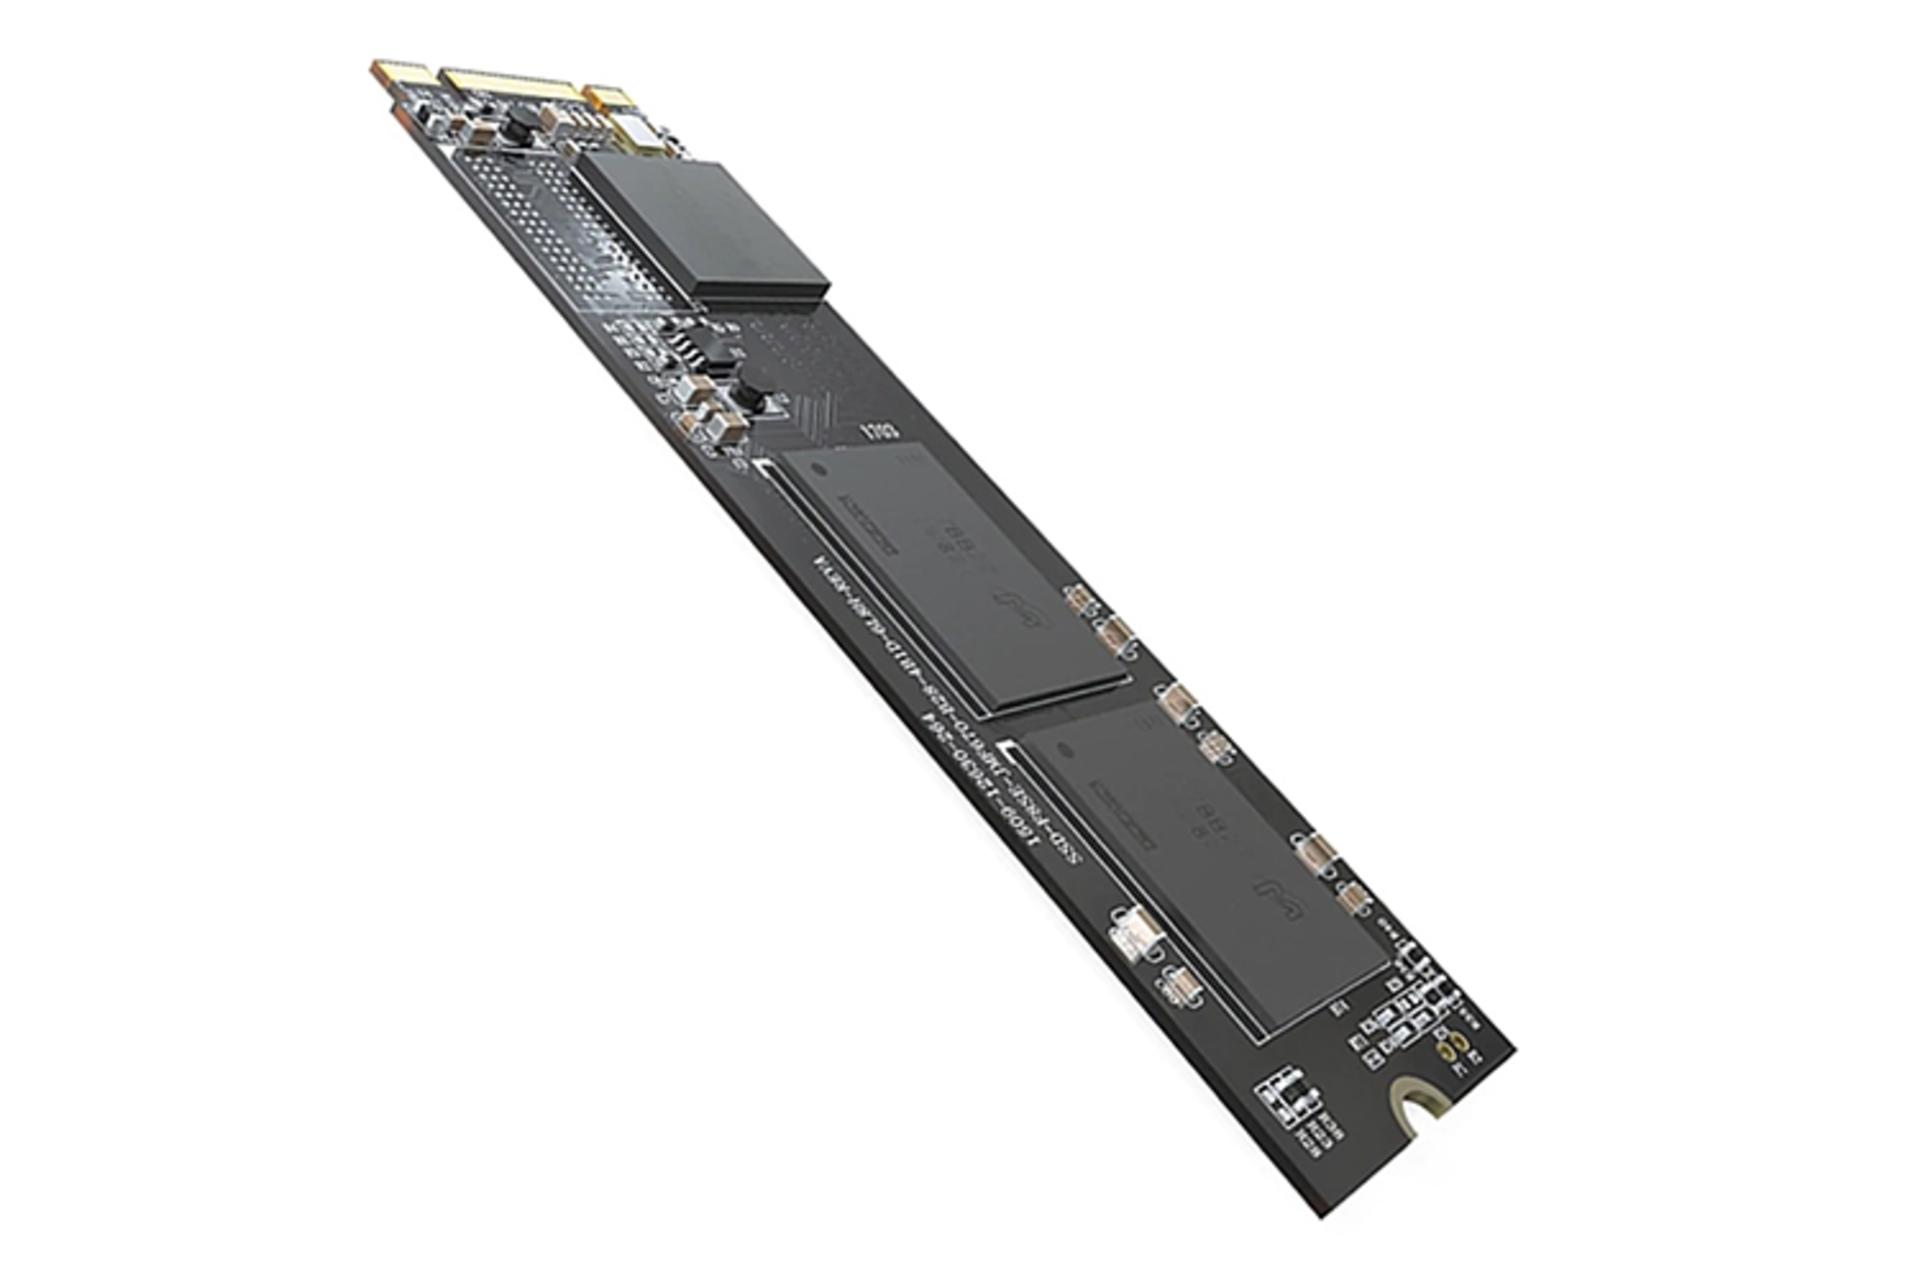 مرجع متخصصين ايران SSD هايك ويژن E100N ظرفيت 512 گيگابايت / HikVision E100N 512GB